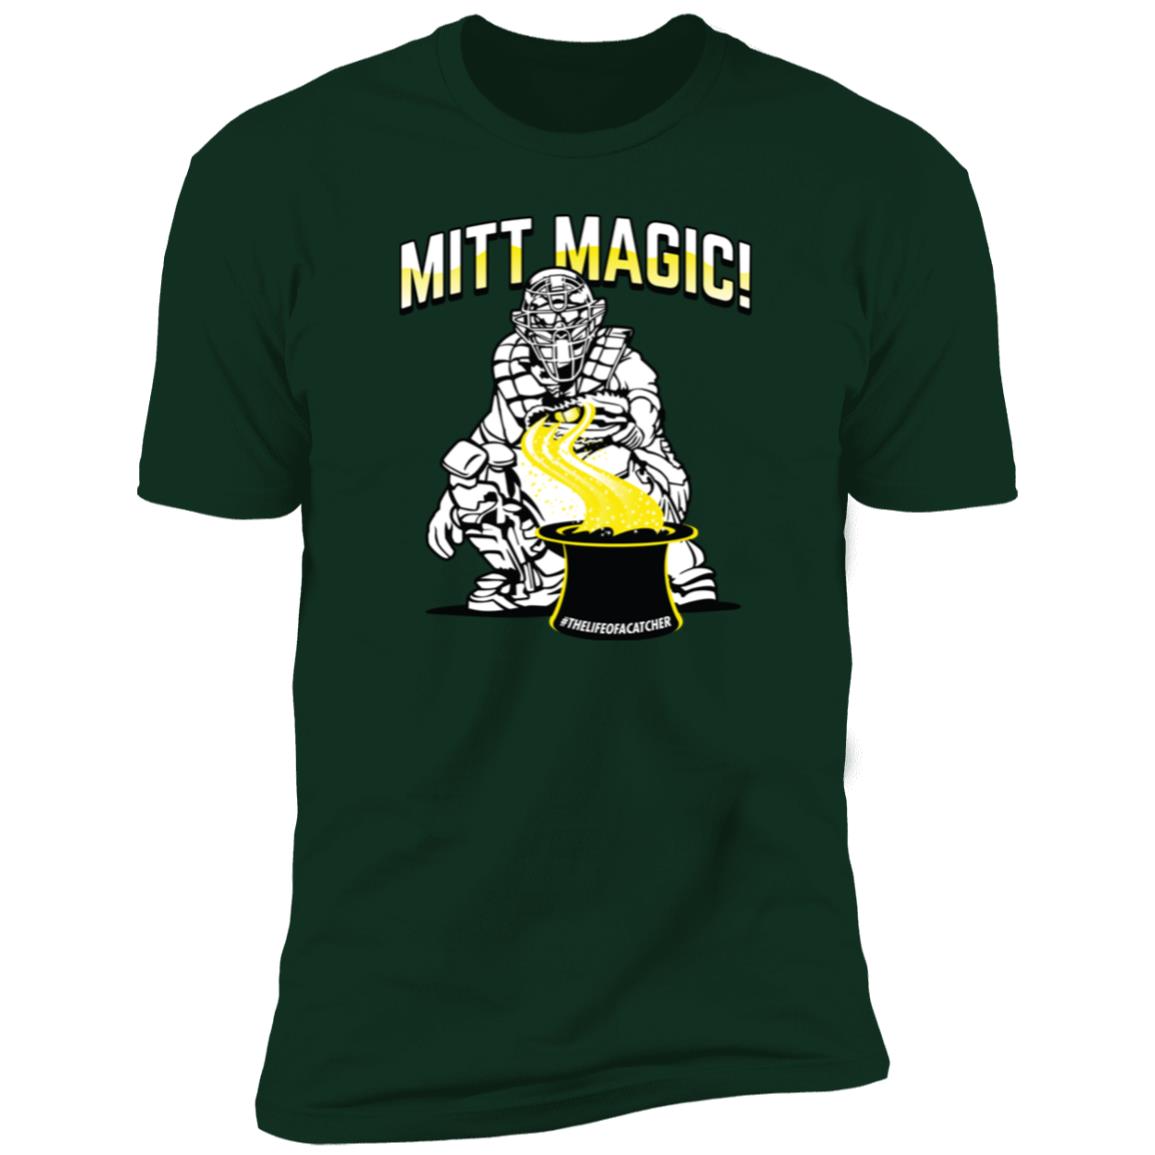 The Catching Guy Mitt Magic Tee green